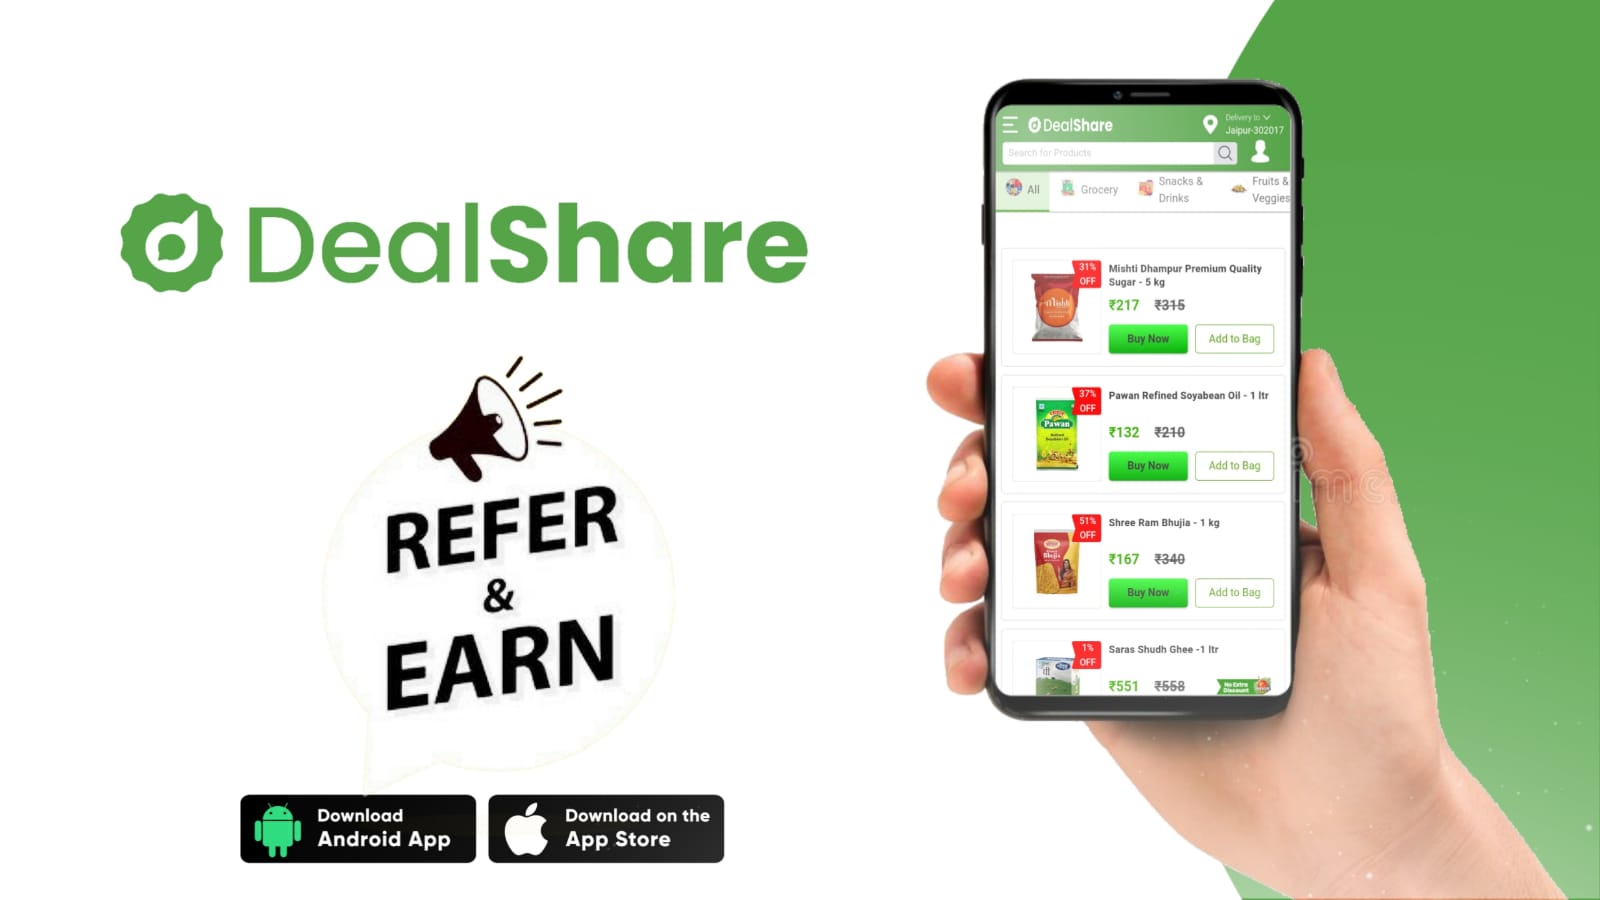 DealShare Referral Code